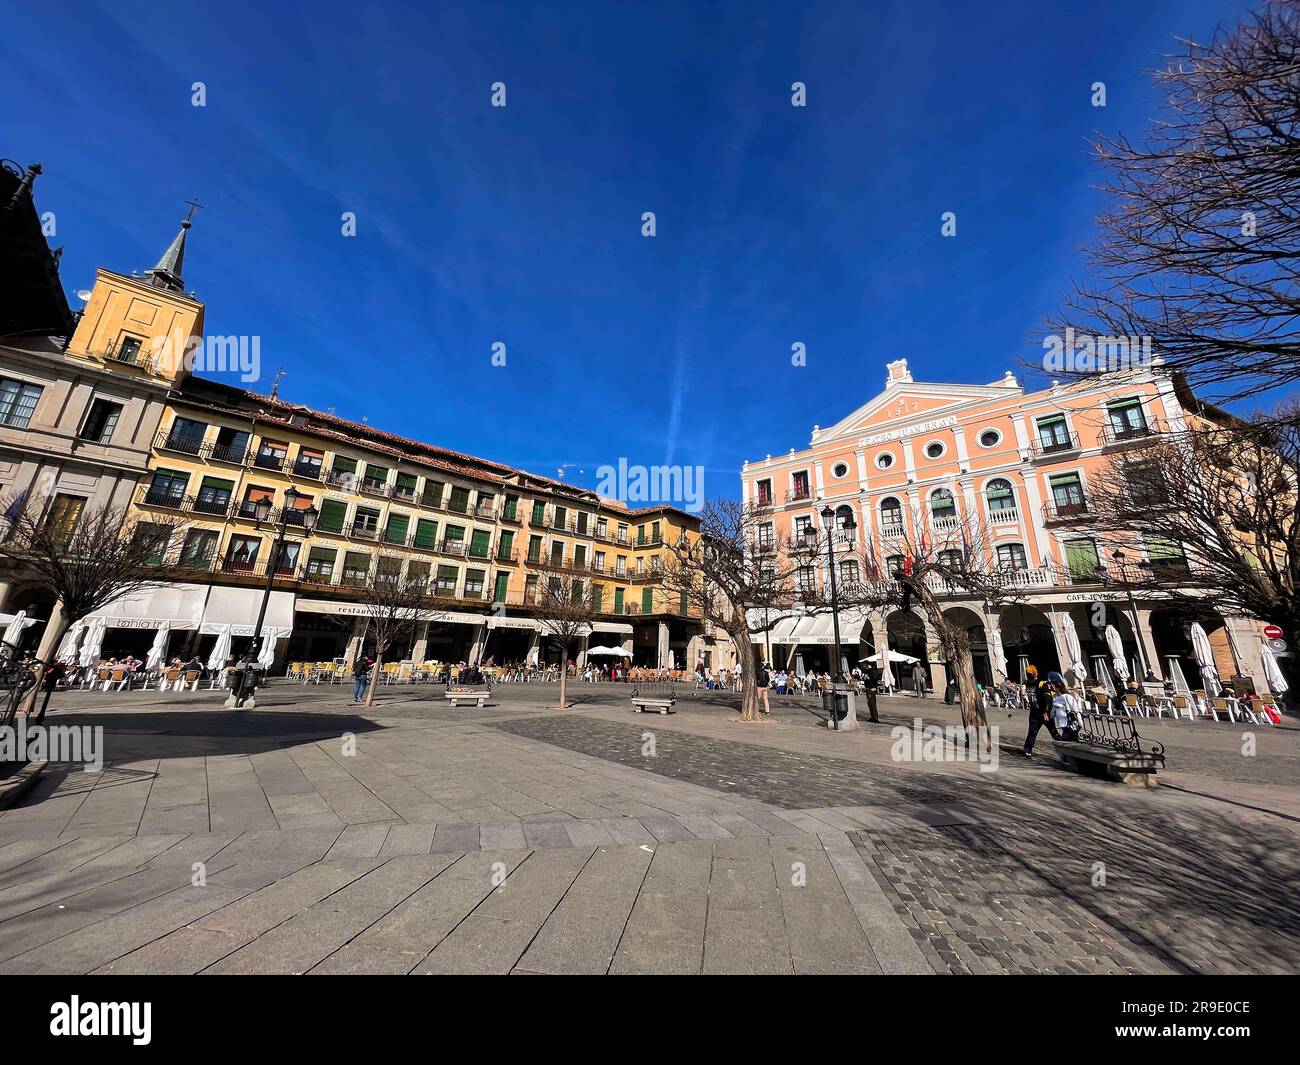 Segovia, Spagna - 18 febbraio 2022: Vista della facciata dell'edificio del Teatro Juan Bravo nella Plaza Mayor di Segovia, Castiglia e Leon, Spagna. Foto Stock